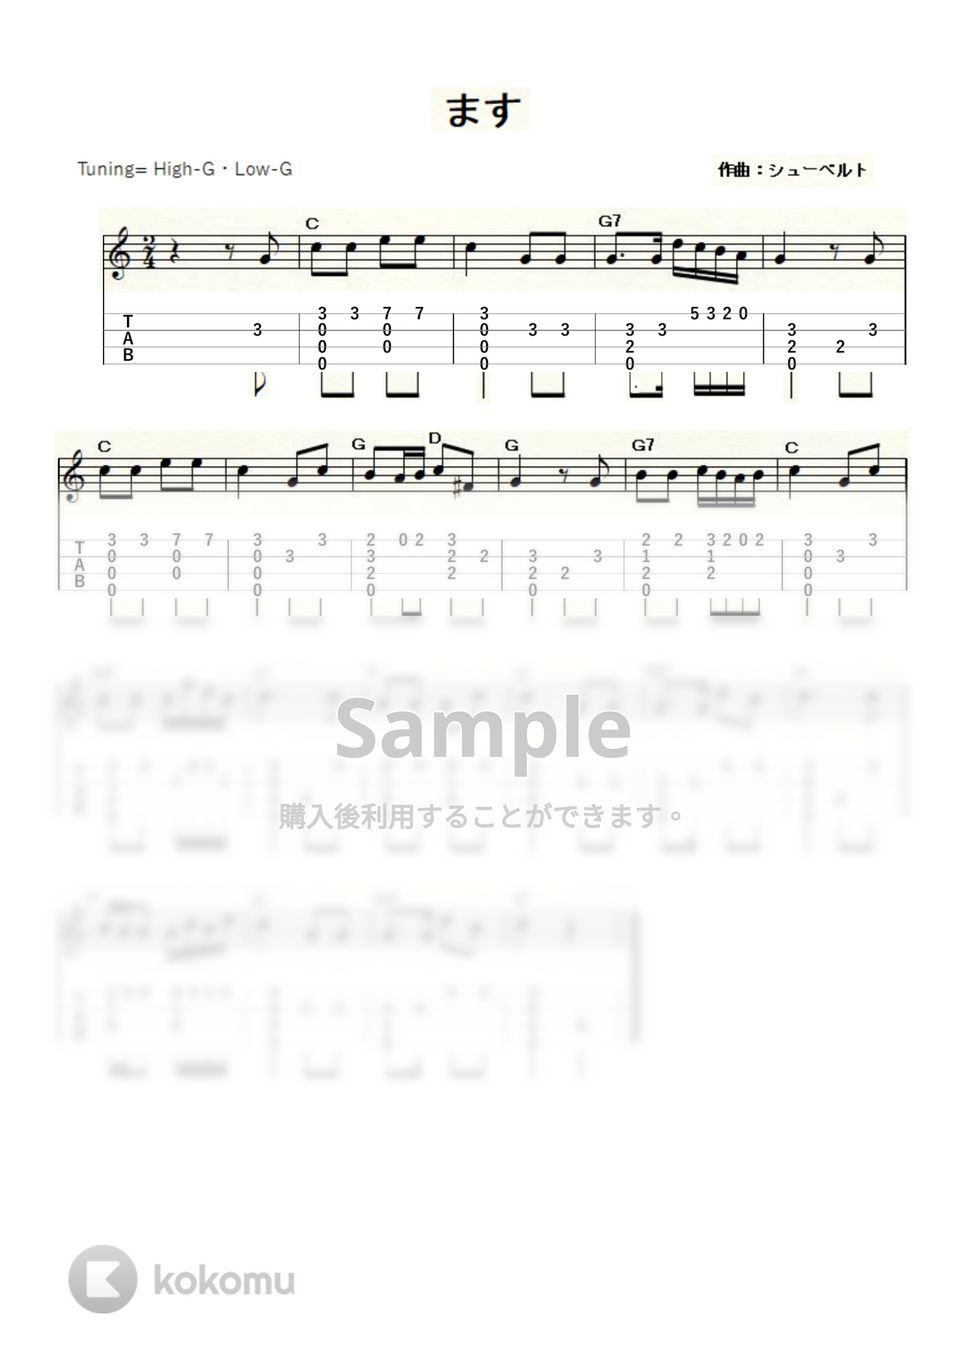 シューベルト - シューベルトの「ます（鱒）」 (ｳｸﾚﾚｿﾛ / High-G・Low-G / 初級～中級) by ukulelepapa